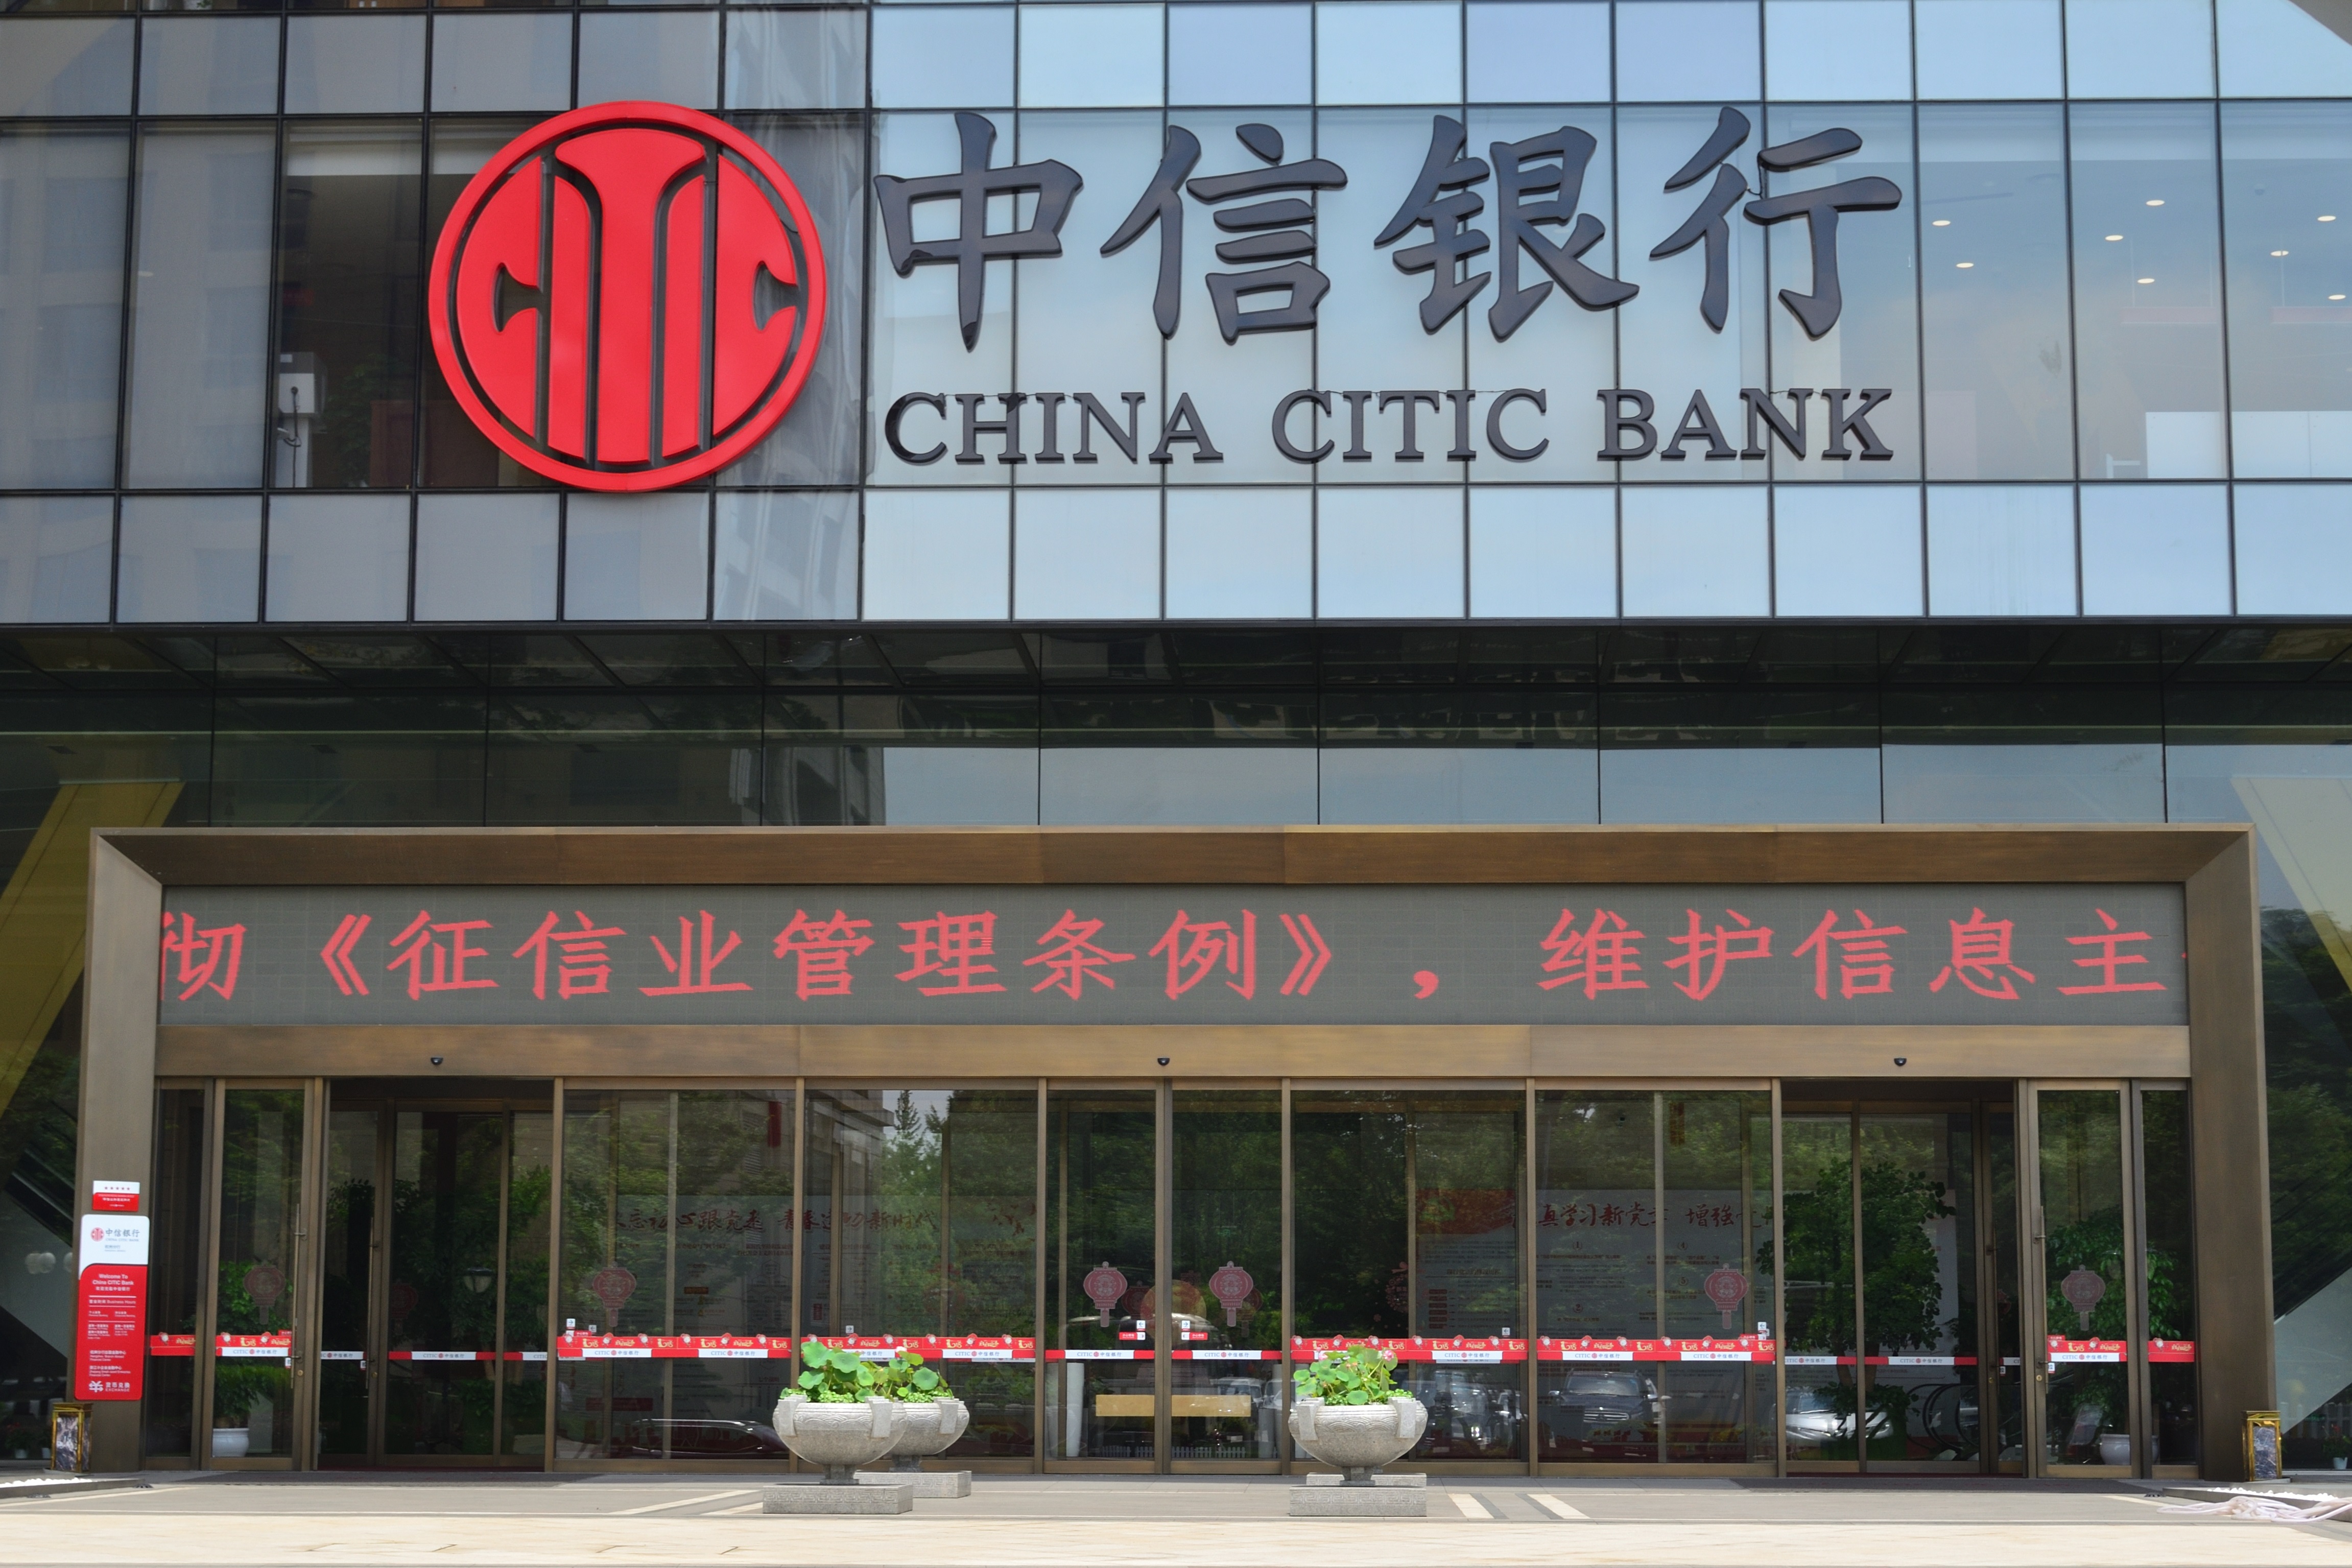 گروه CITIC چین در آنگولا واحد پروفیل آلومینیومی می سازد/ این واحد ۱۰ هزار تنی با سرمایه گذاری ۴۰ میلیون دلار عملیاتی می شود